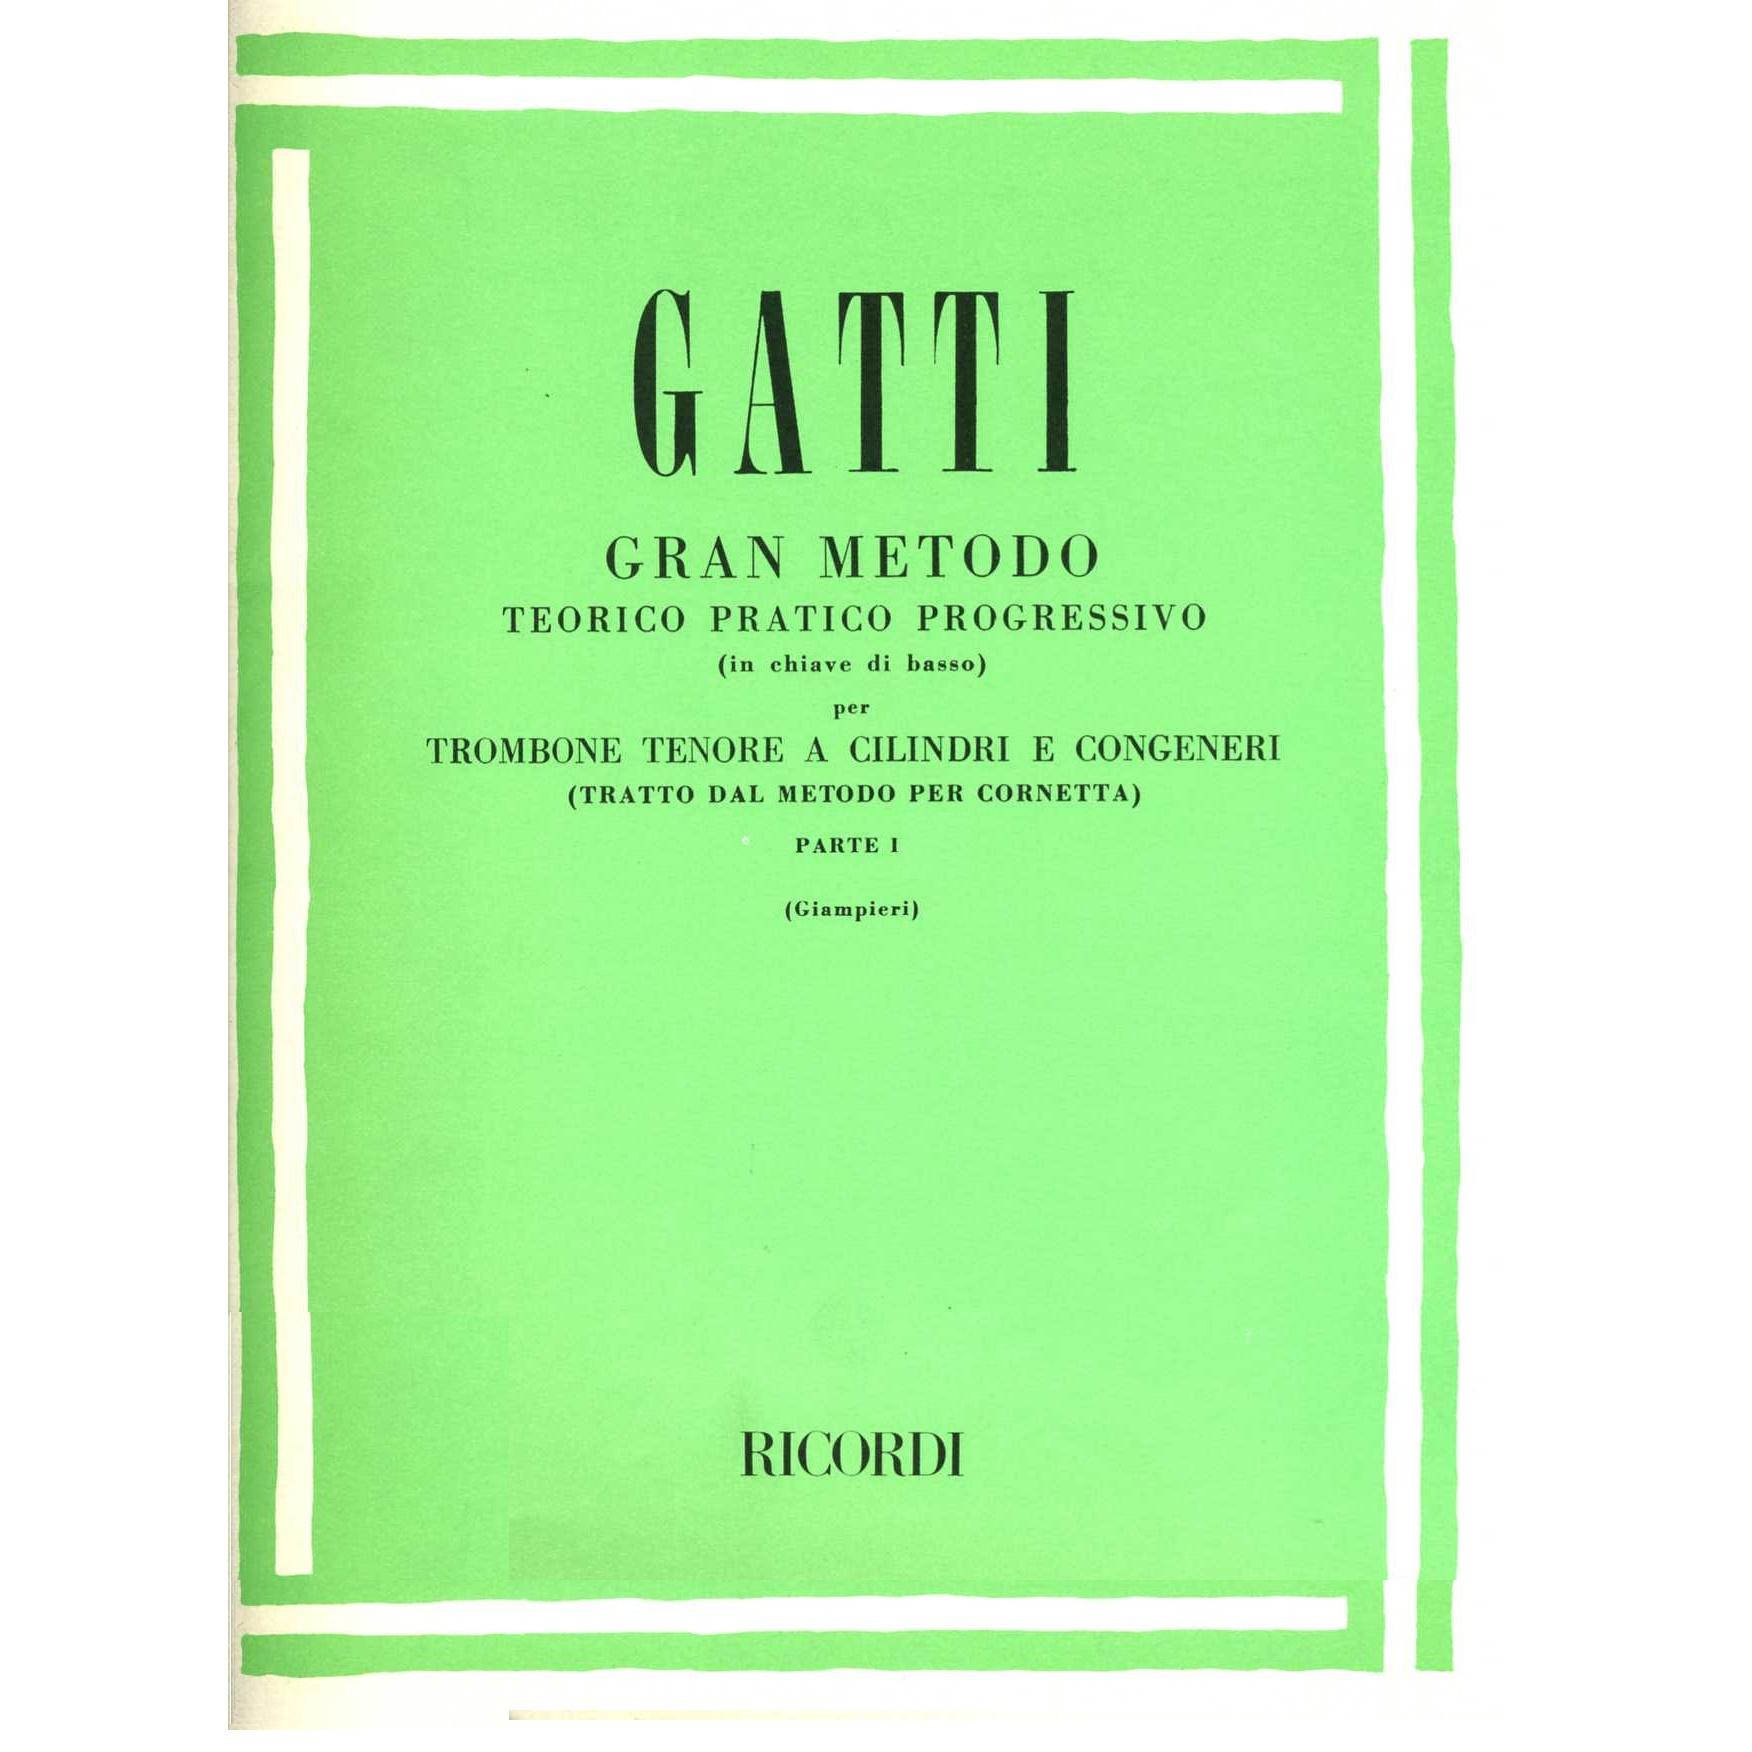 Gatti Metodo teorico pratico progressivo per trombone tenore a cilindri e congeneri Parte 1 (Giampieri) - Ricordi